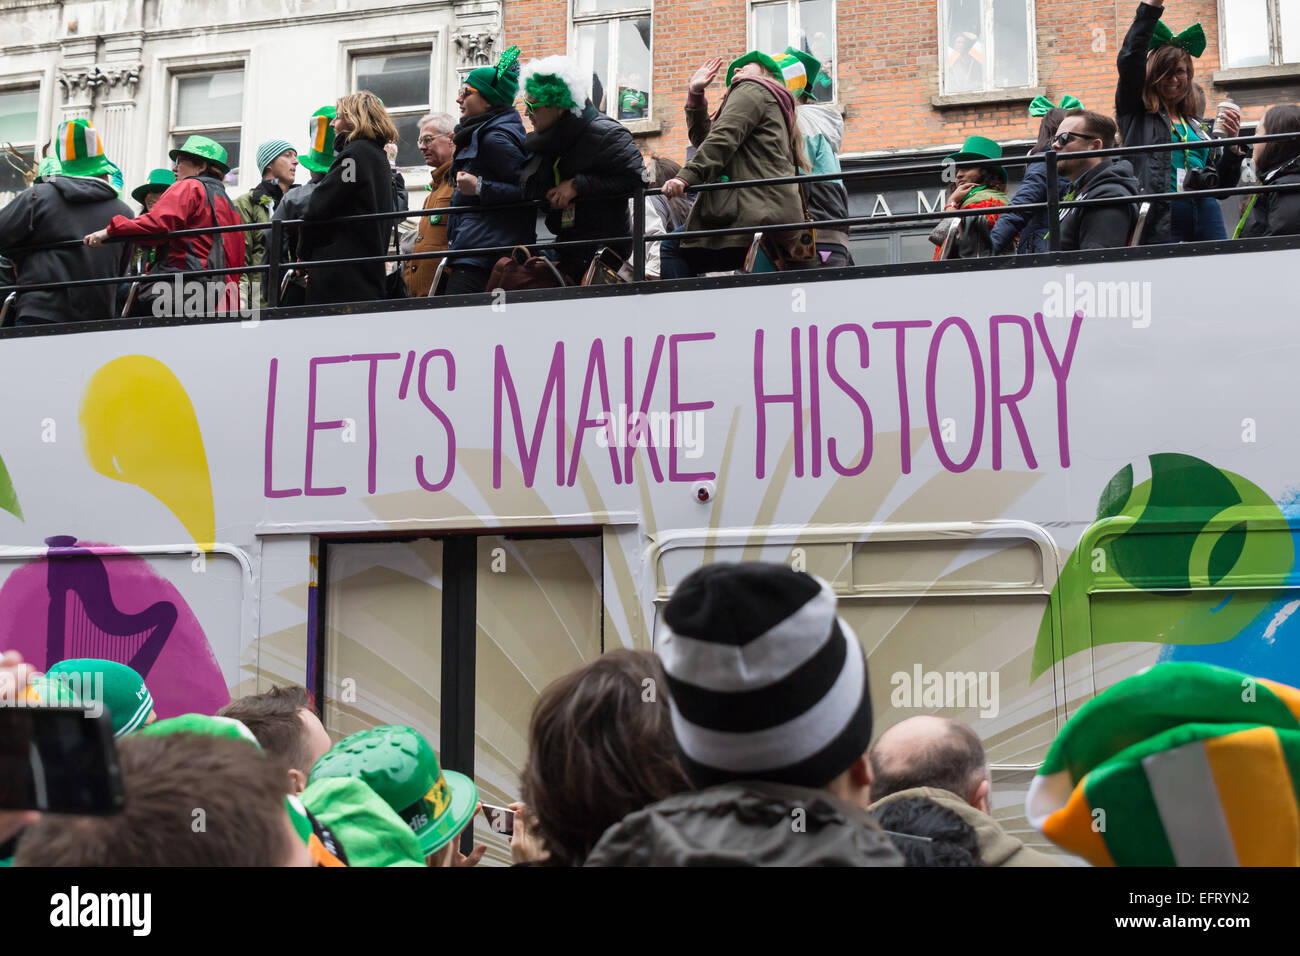 St. Patrick's Day parade in Dublin, Ireland. Let's make history Stock Photo